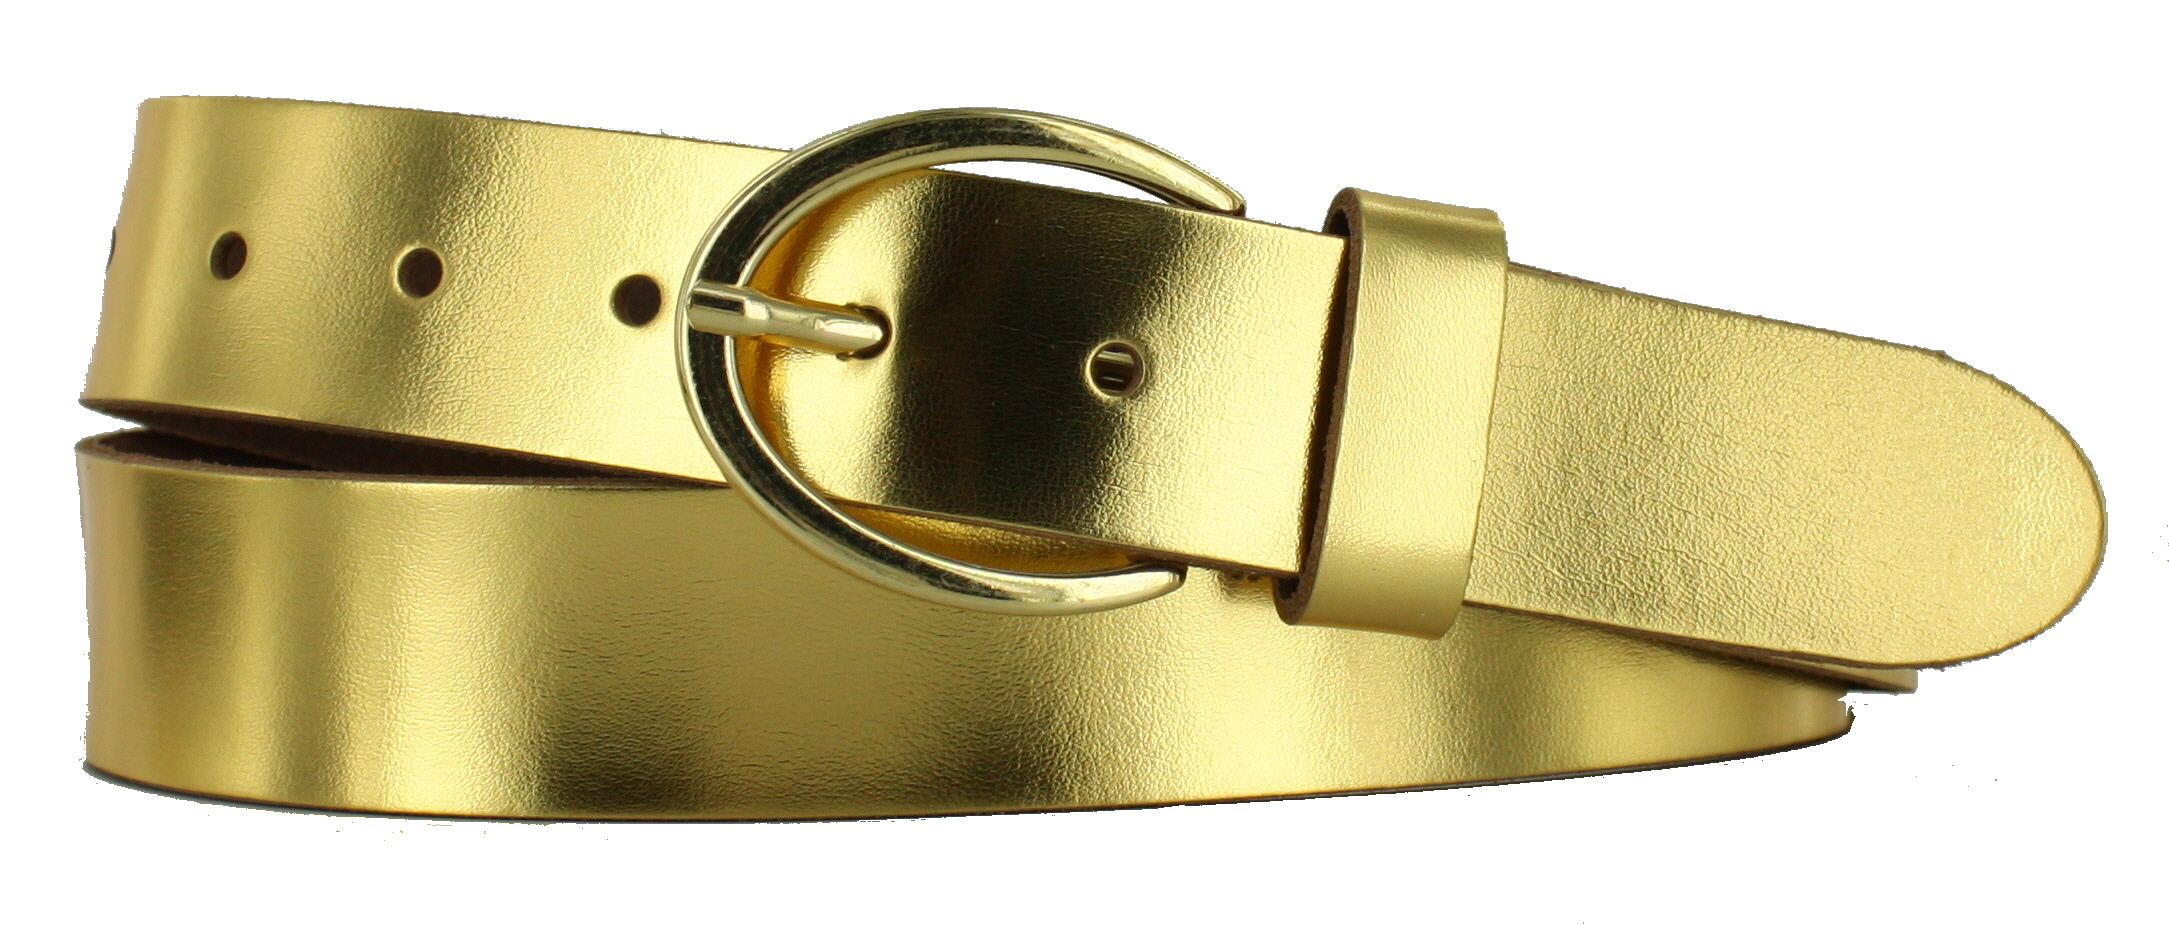 Ga trouwen probleem Periodiek Goud 3.5 cm met gouden gesp - Pro Leather Belts